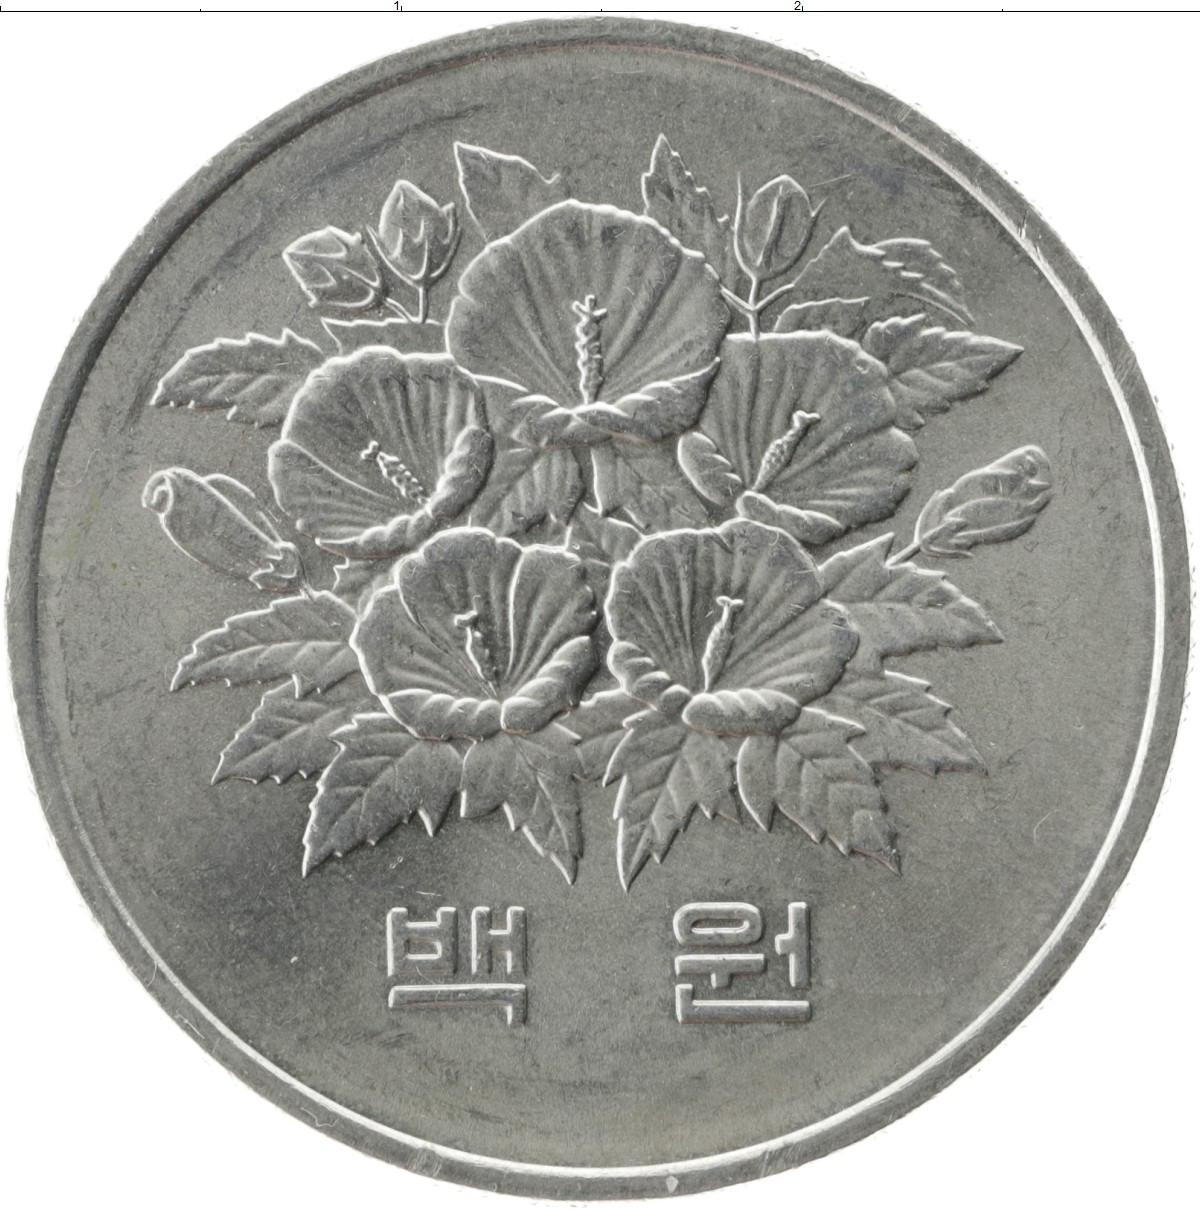 100 вон это сколько. Монета Южной Кореи 100 вон. Монетка корейская 100 вон. Южная Корея 100 вон (иностранные монеты).